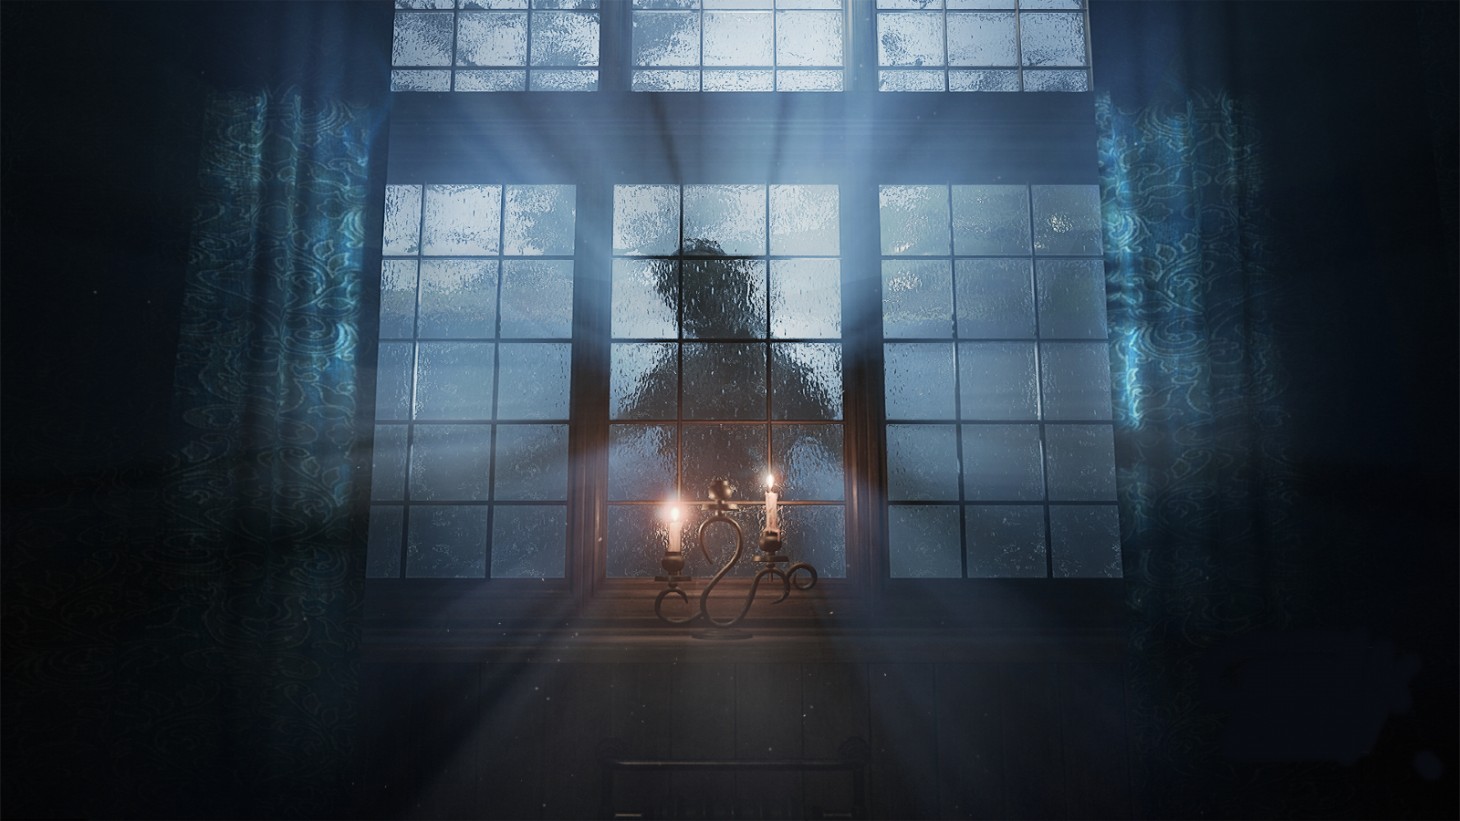 Überprüfe die Unreal Engine 5 Leistung von Layers Of Fear in einem neuen Gameplay Trailer